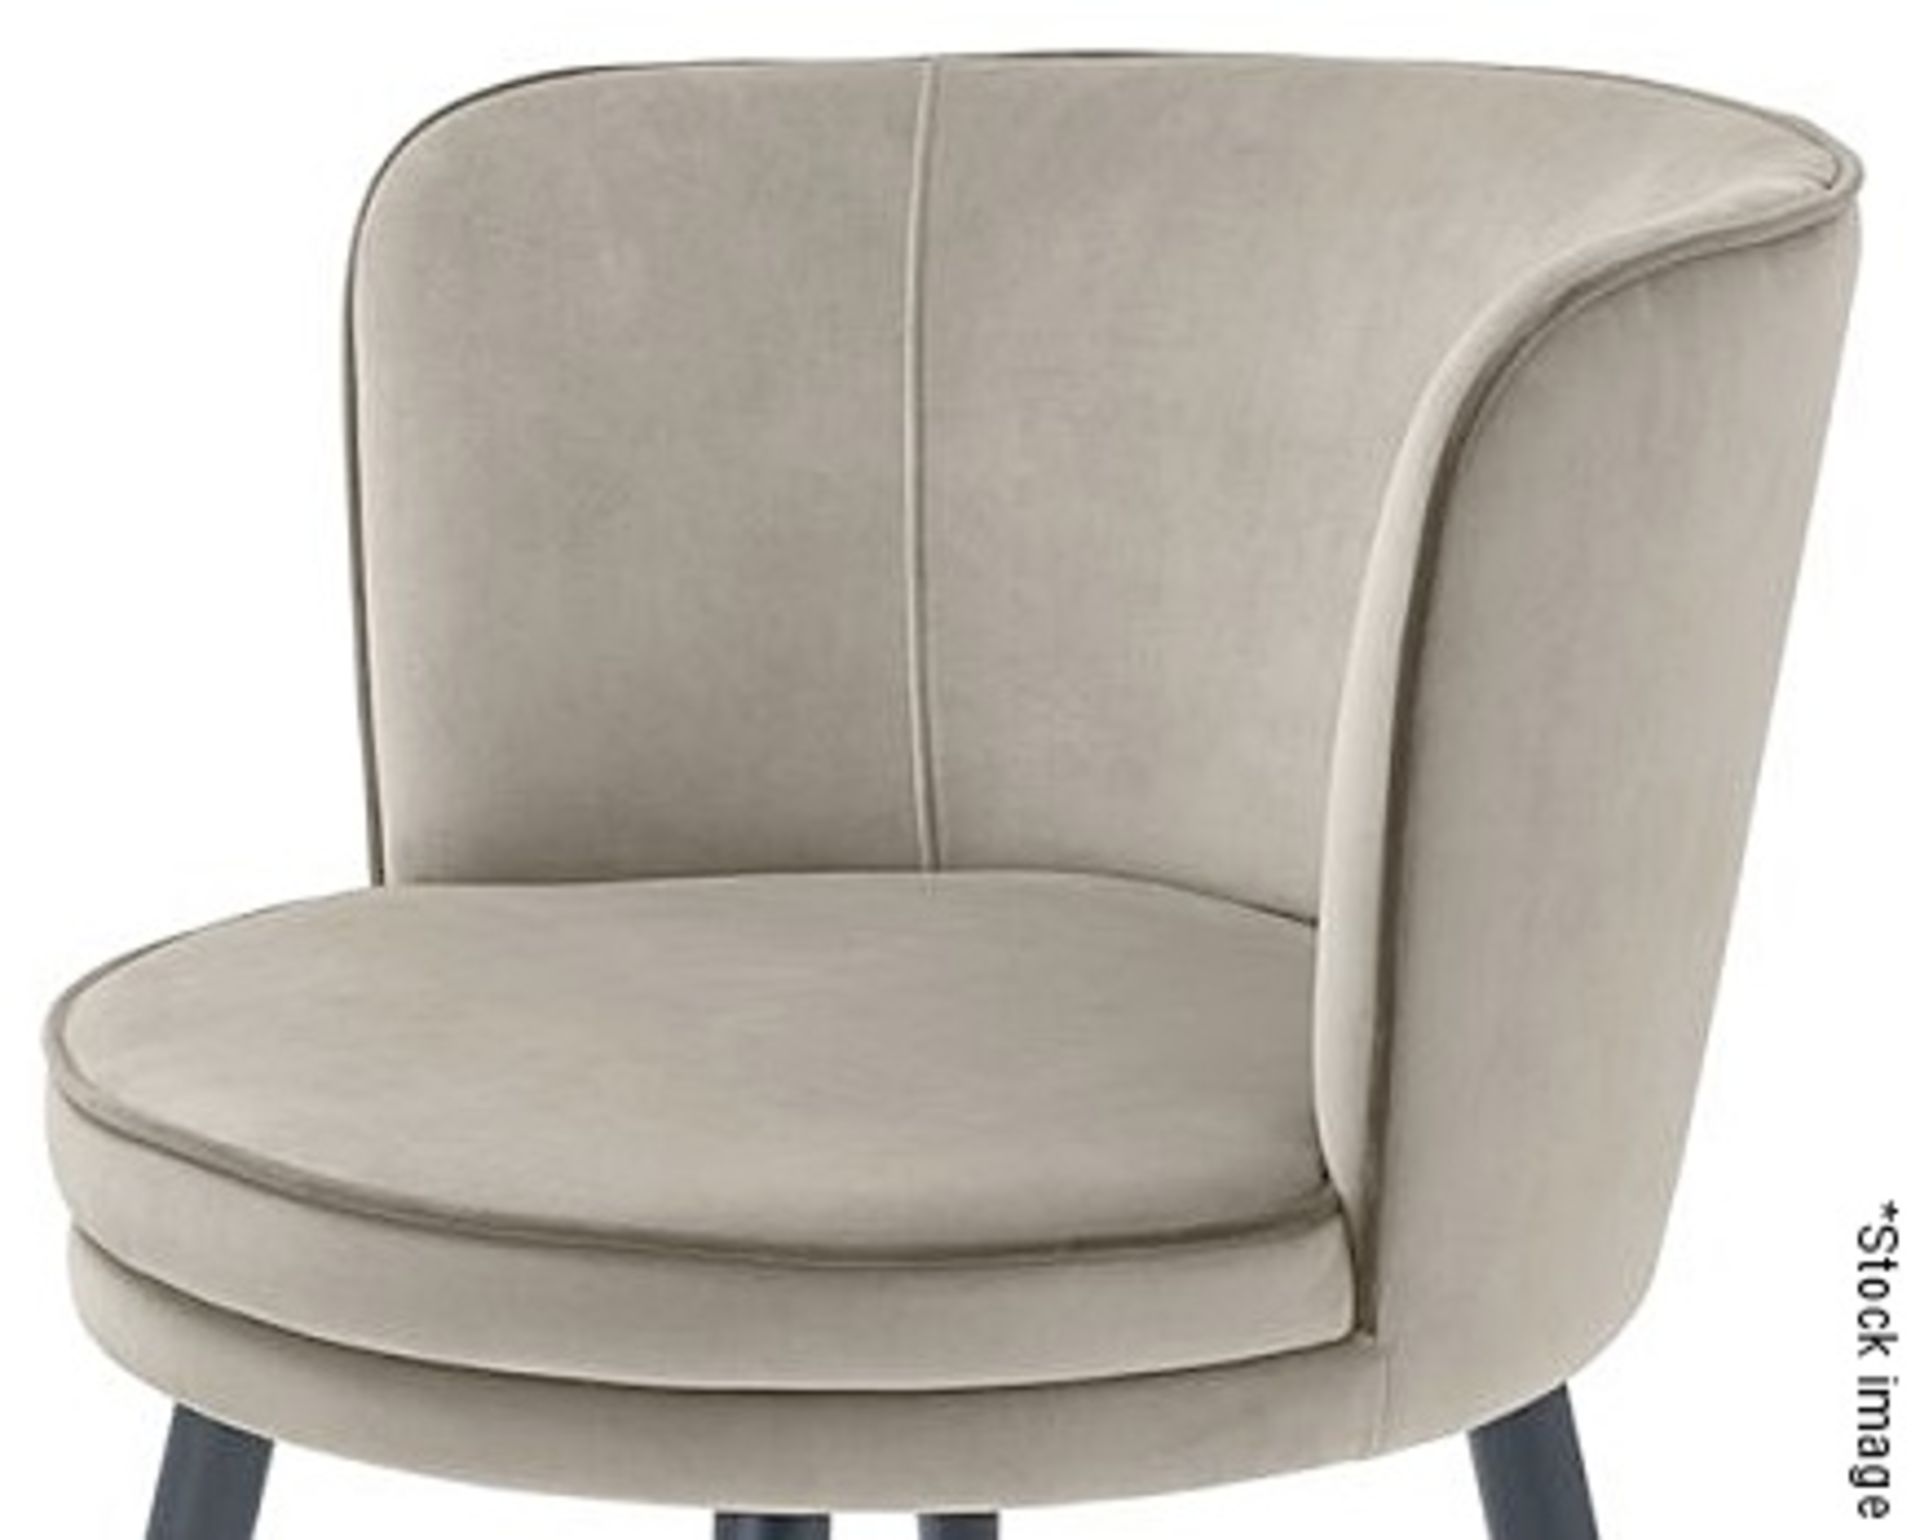 1 x EICHHOLTZ 'Grenada' Luxury Velvet Upholstered Swivel Chair (Top only) - Unused Boxed Stock -